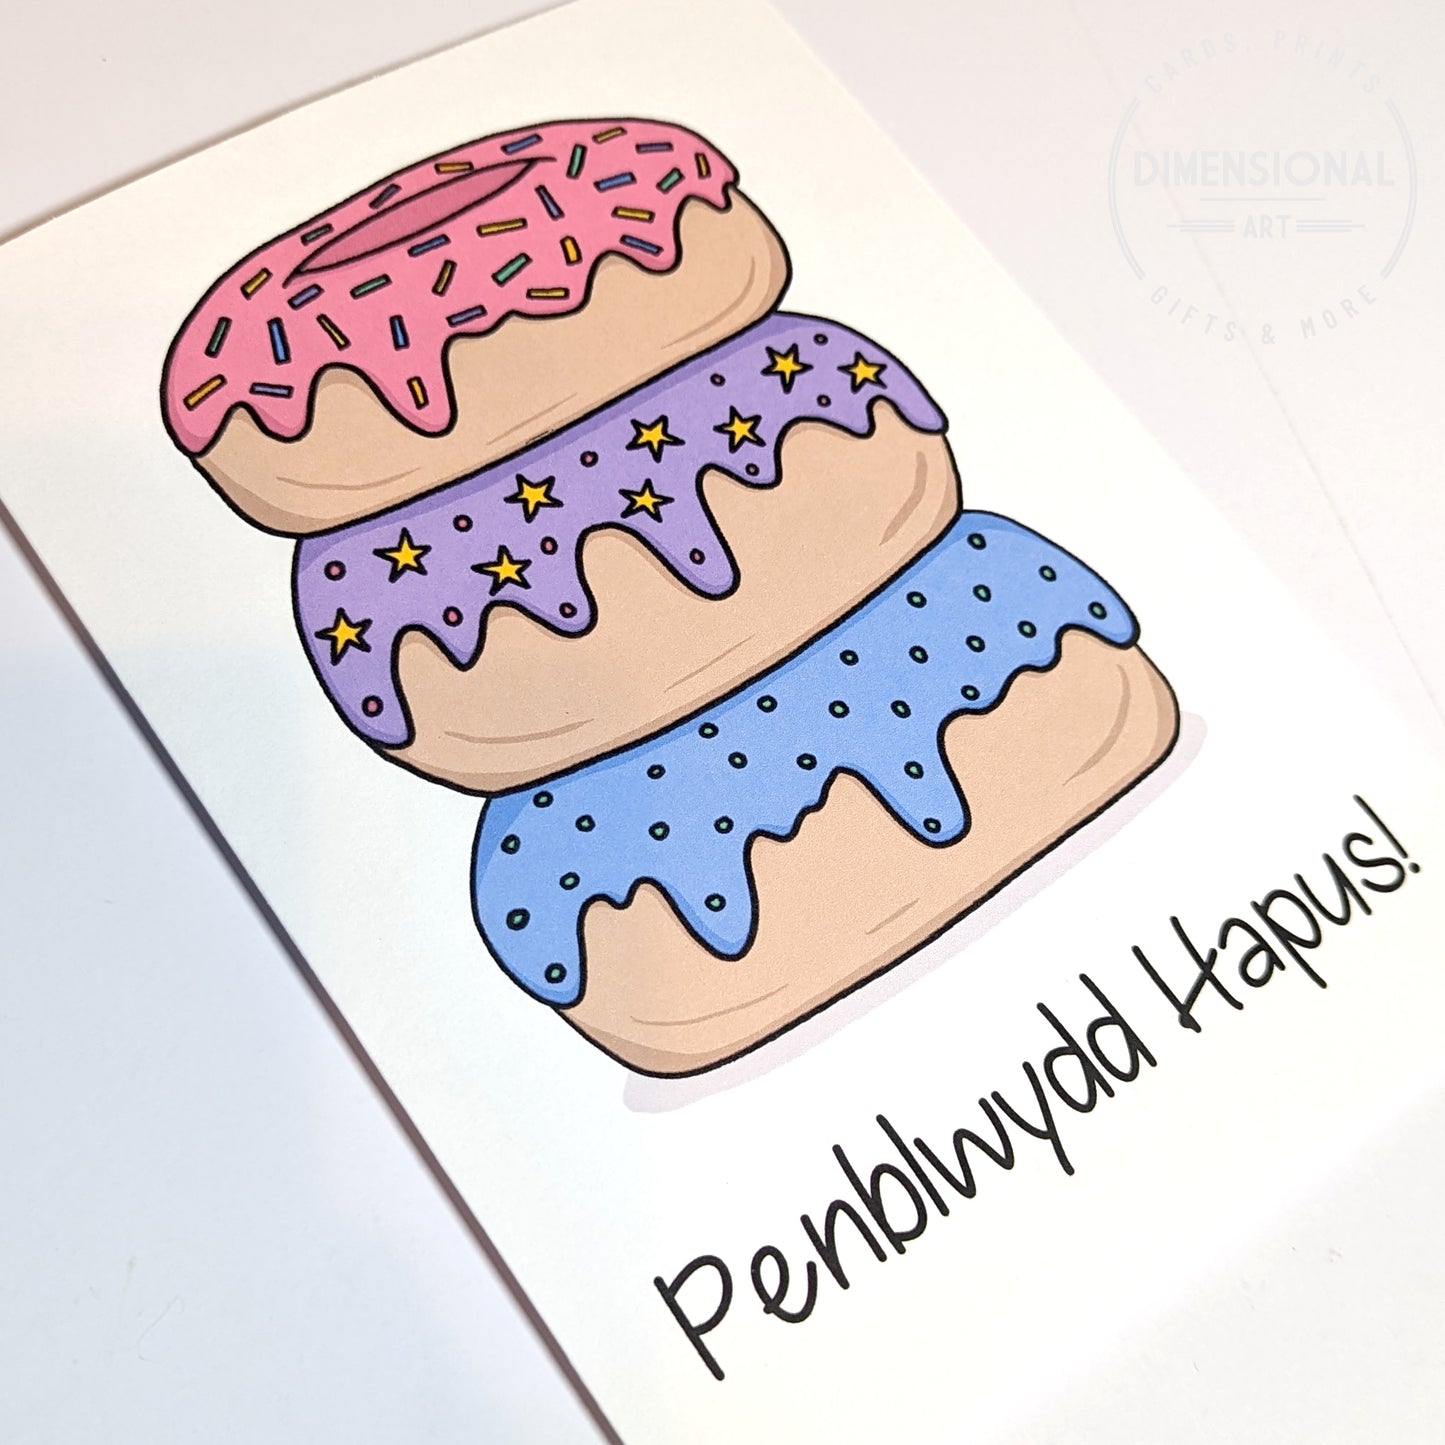 Donuts Penblwydd Hapus (Birthday) Card - Welsh